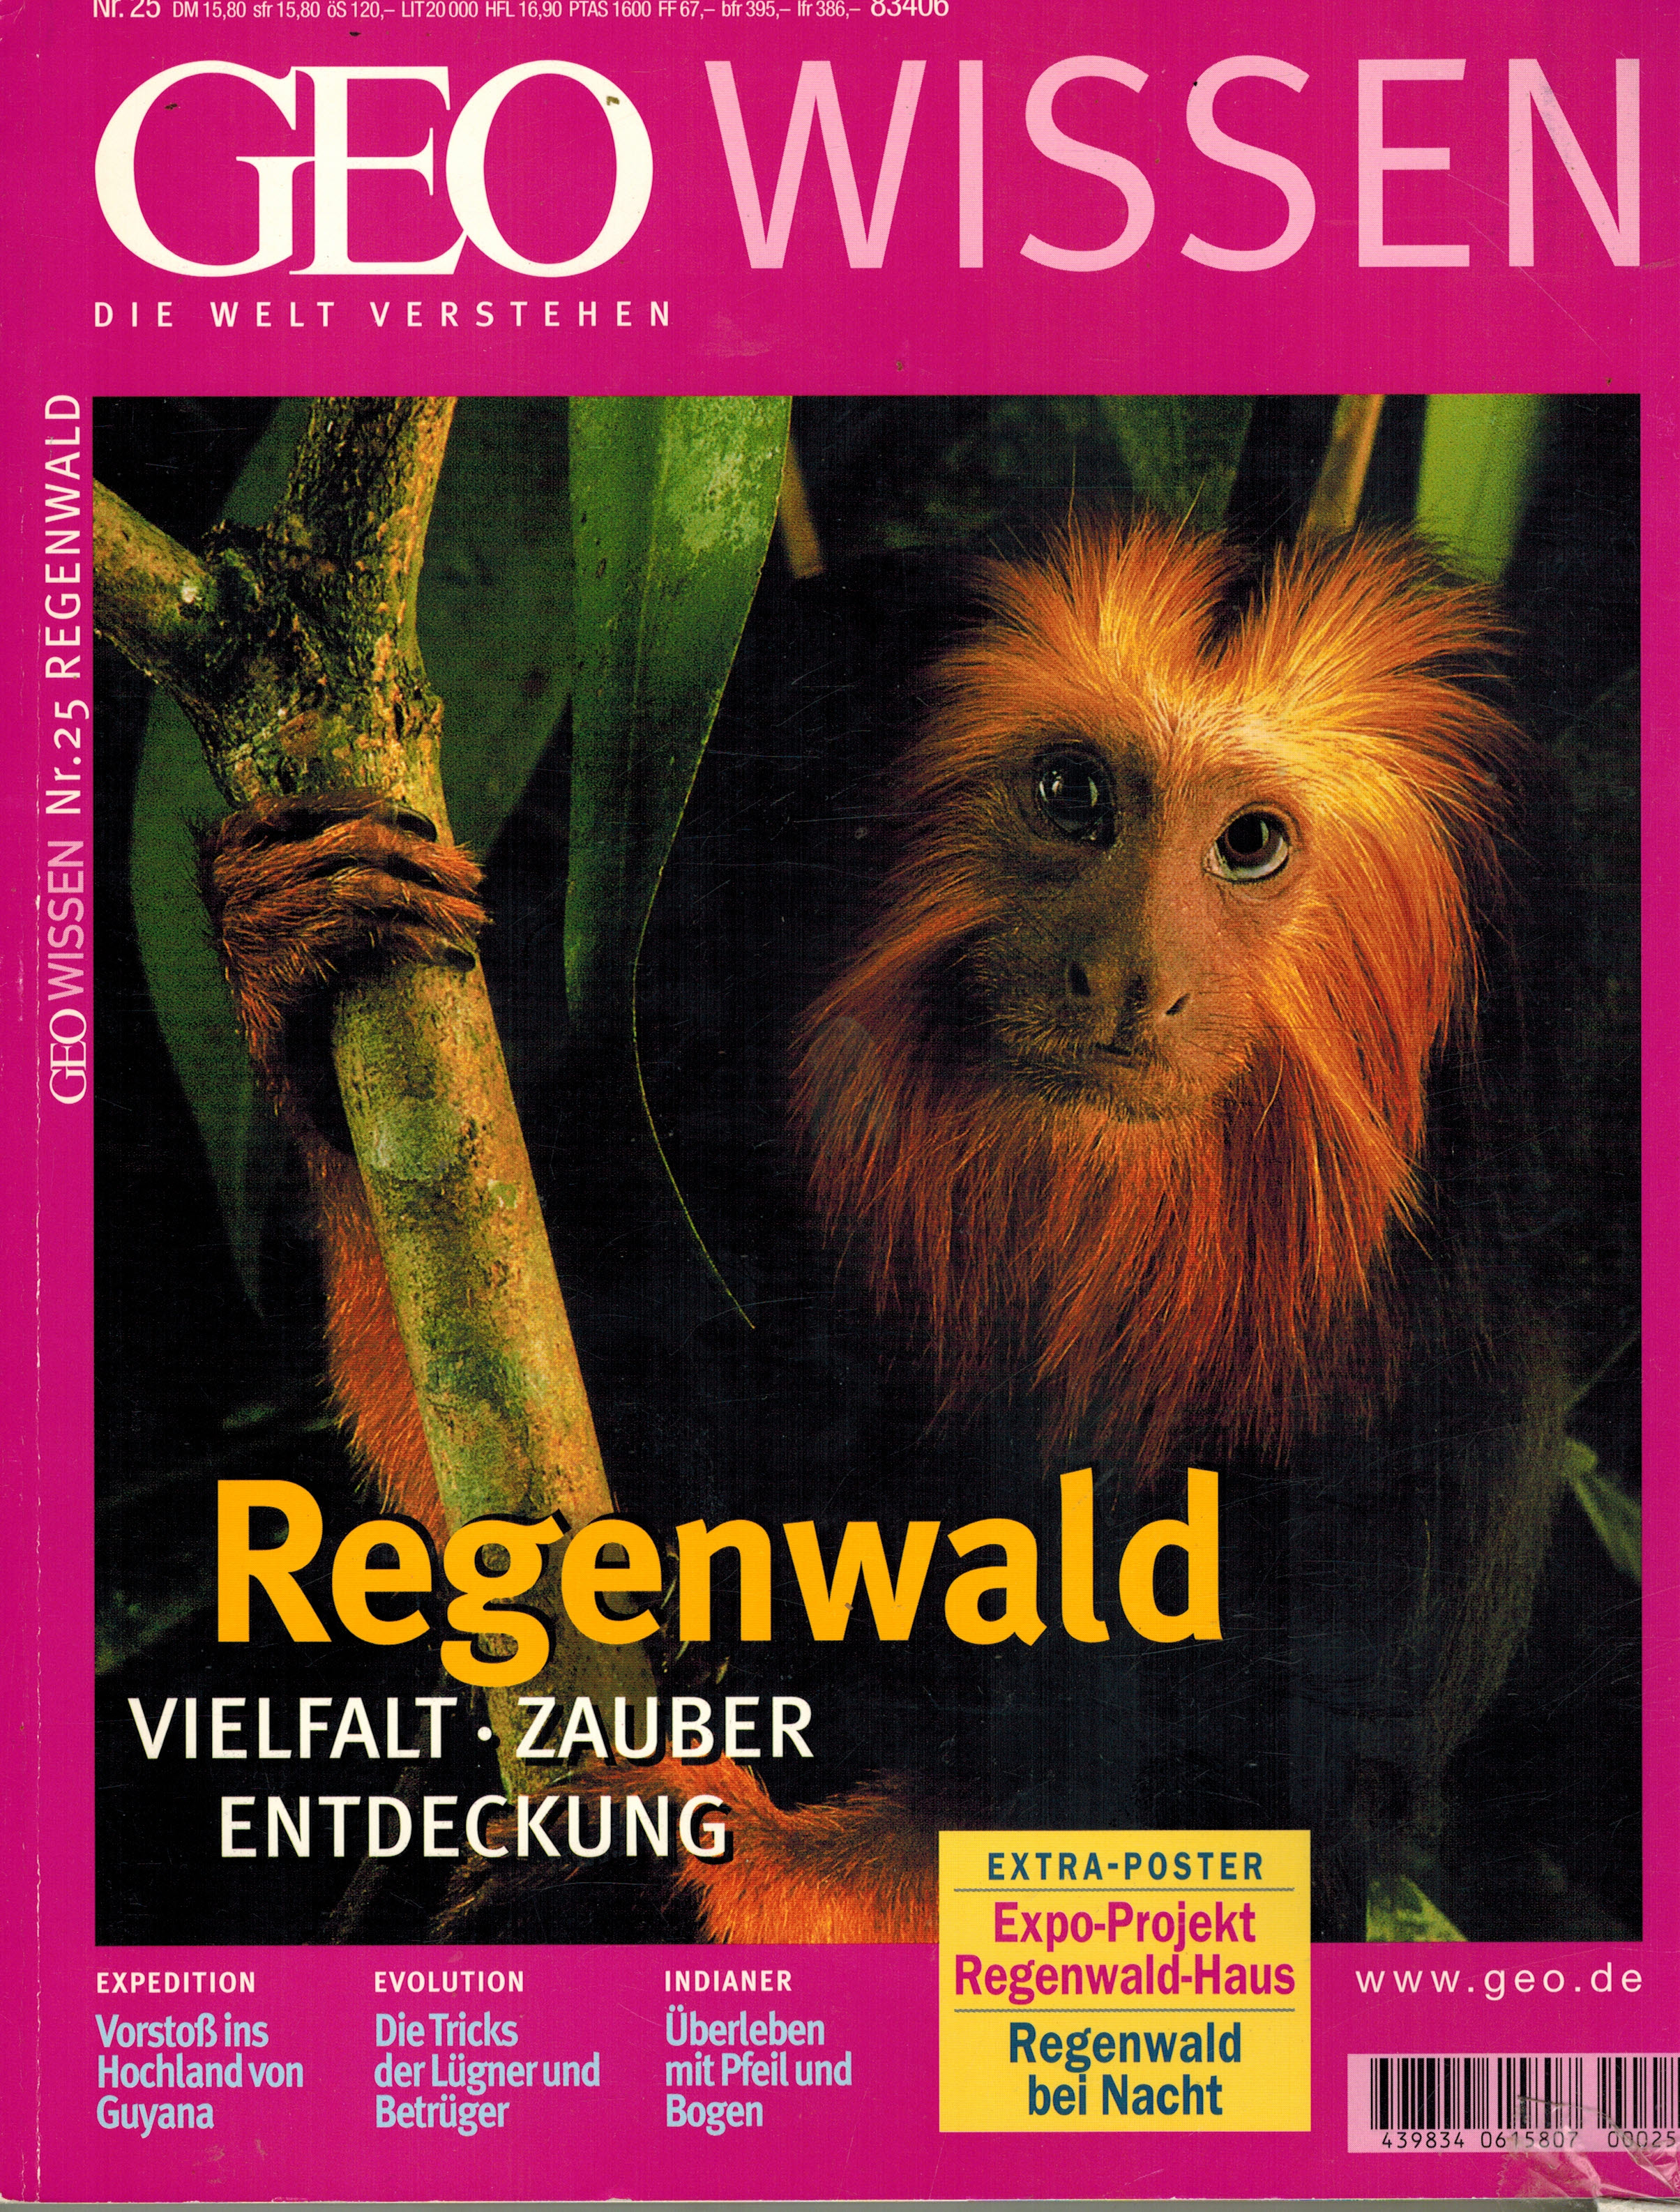 GEO WISSENNr 25 / 2000Regenwald